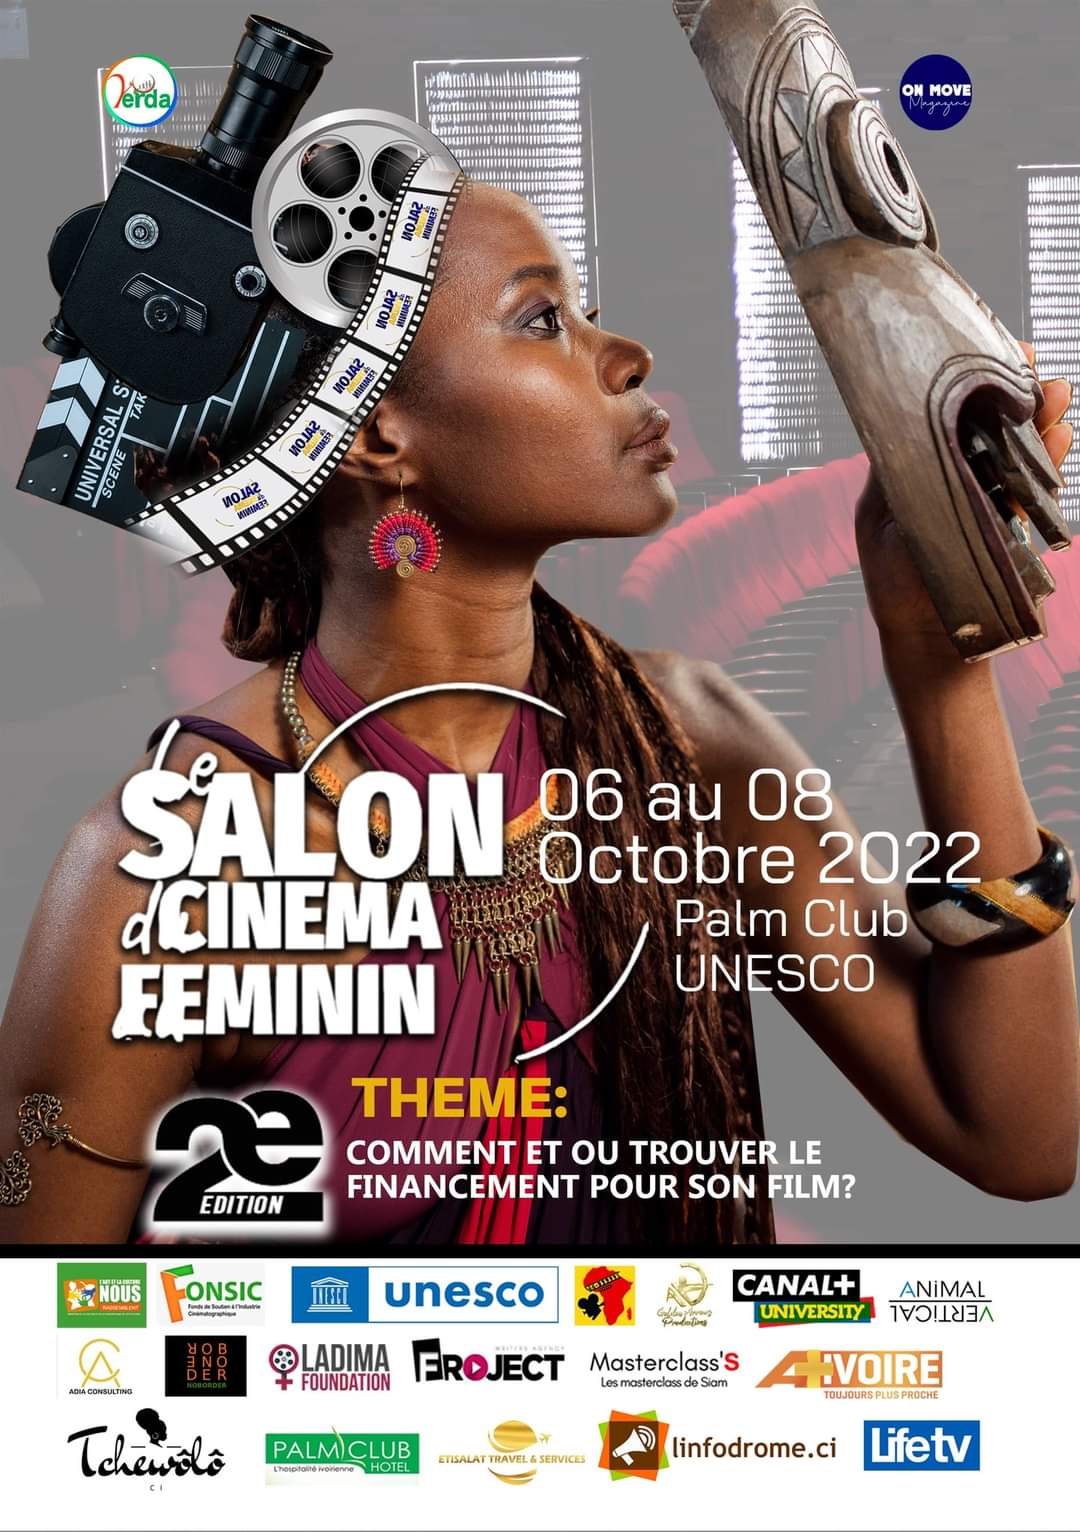 Canal + partenaire de la 2e édition du Salon du Cinema Féminin en Côte d’Ivoire